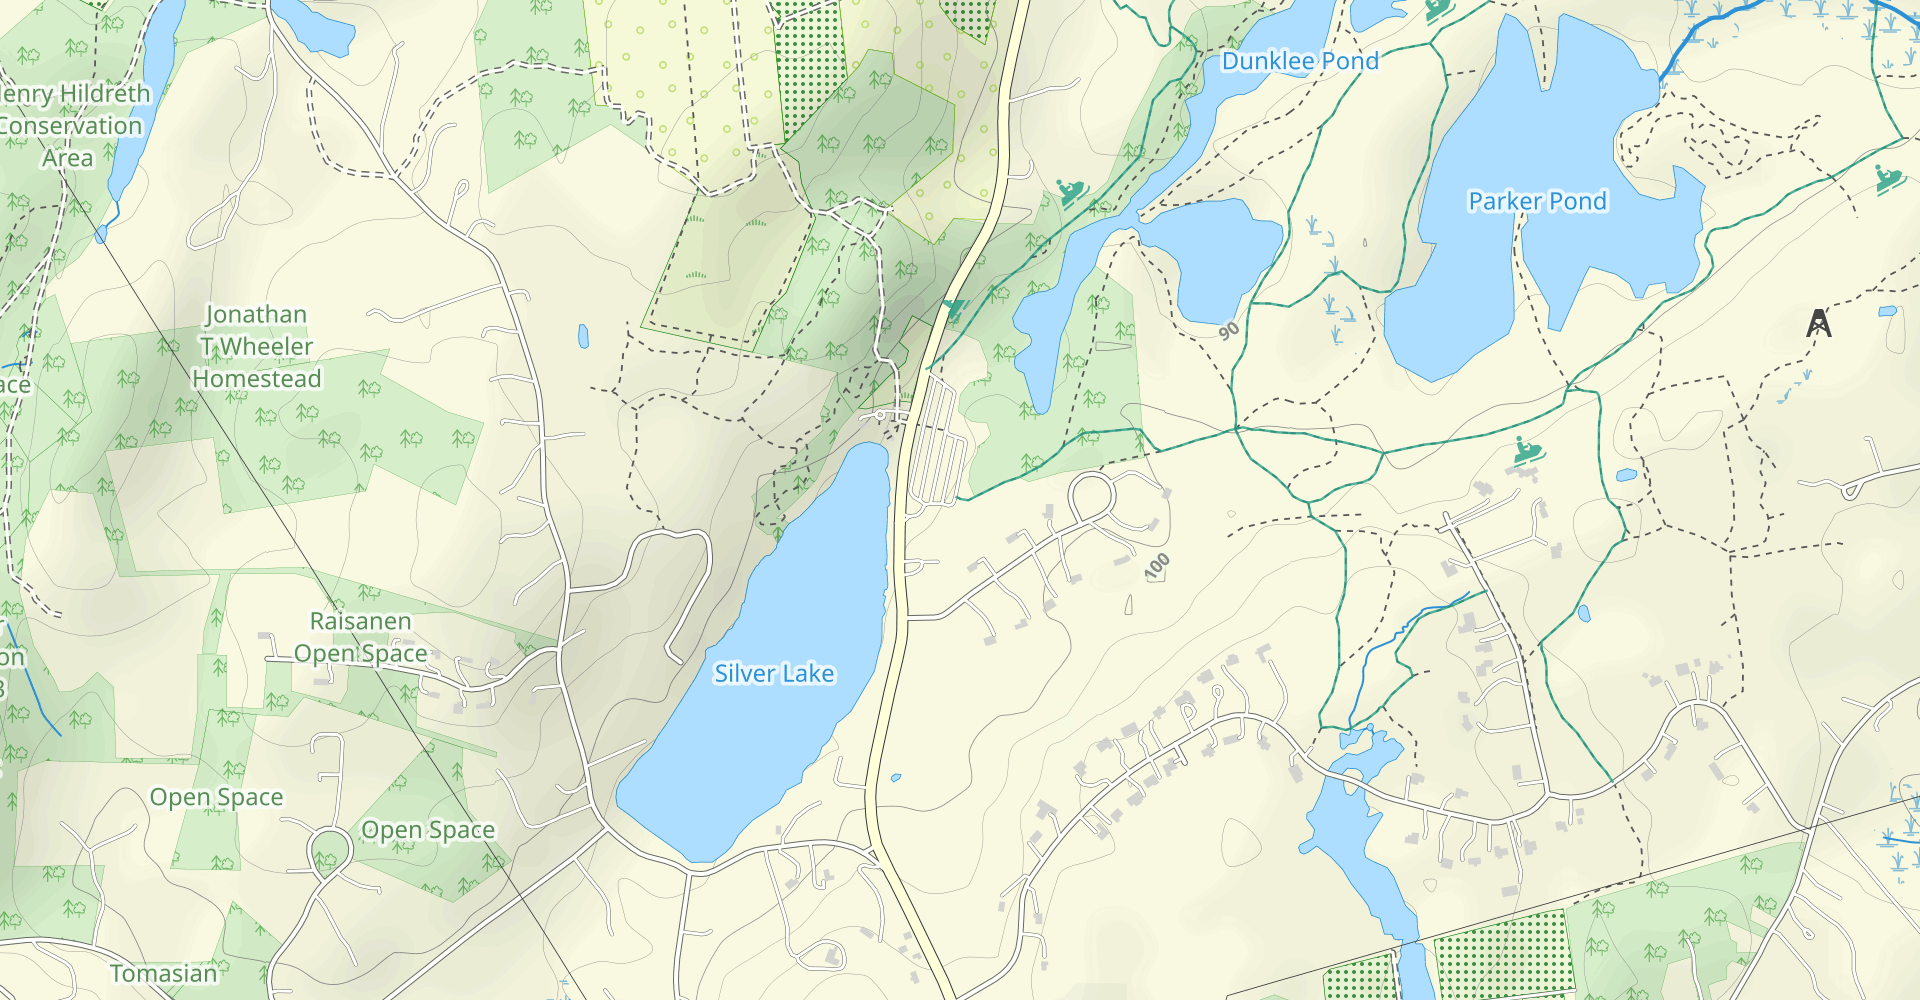 Dunklee Pond and Parker Pond Loop Trail